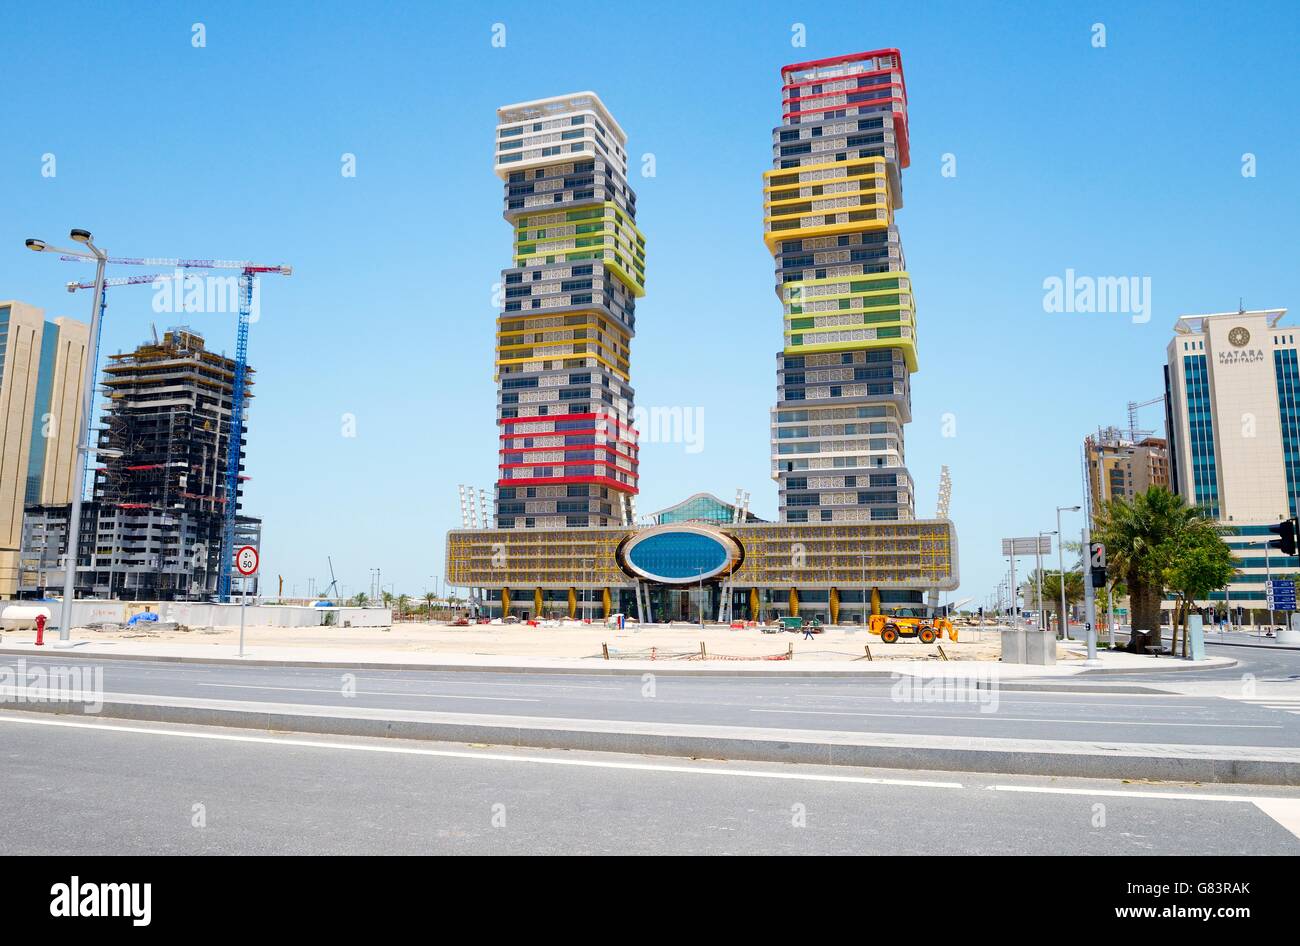 El rápido desarrollo de la nueva ciudad de lusail, Qatar. El colorido torres gemelas rascacielos aka "bloques de construcción" en el distrito de la marina Foto de stock